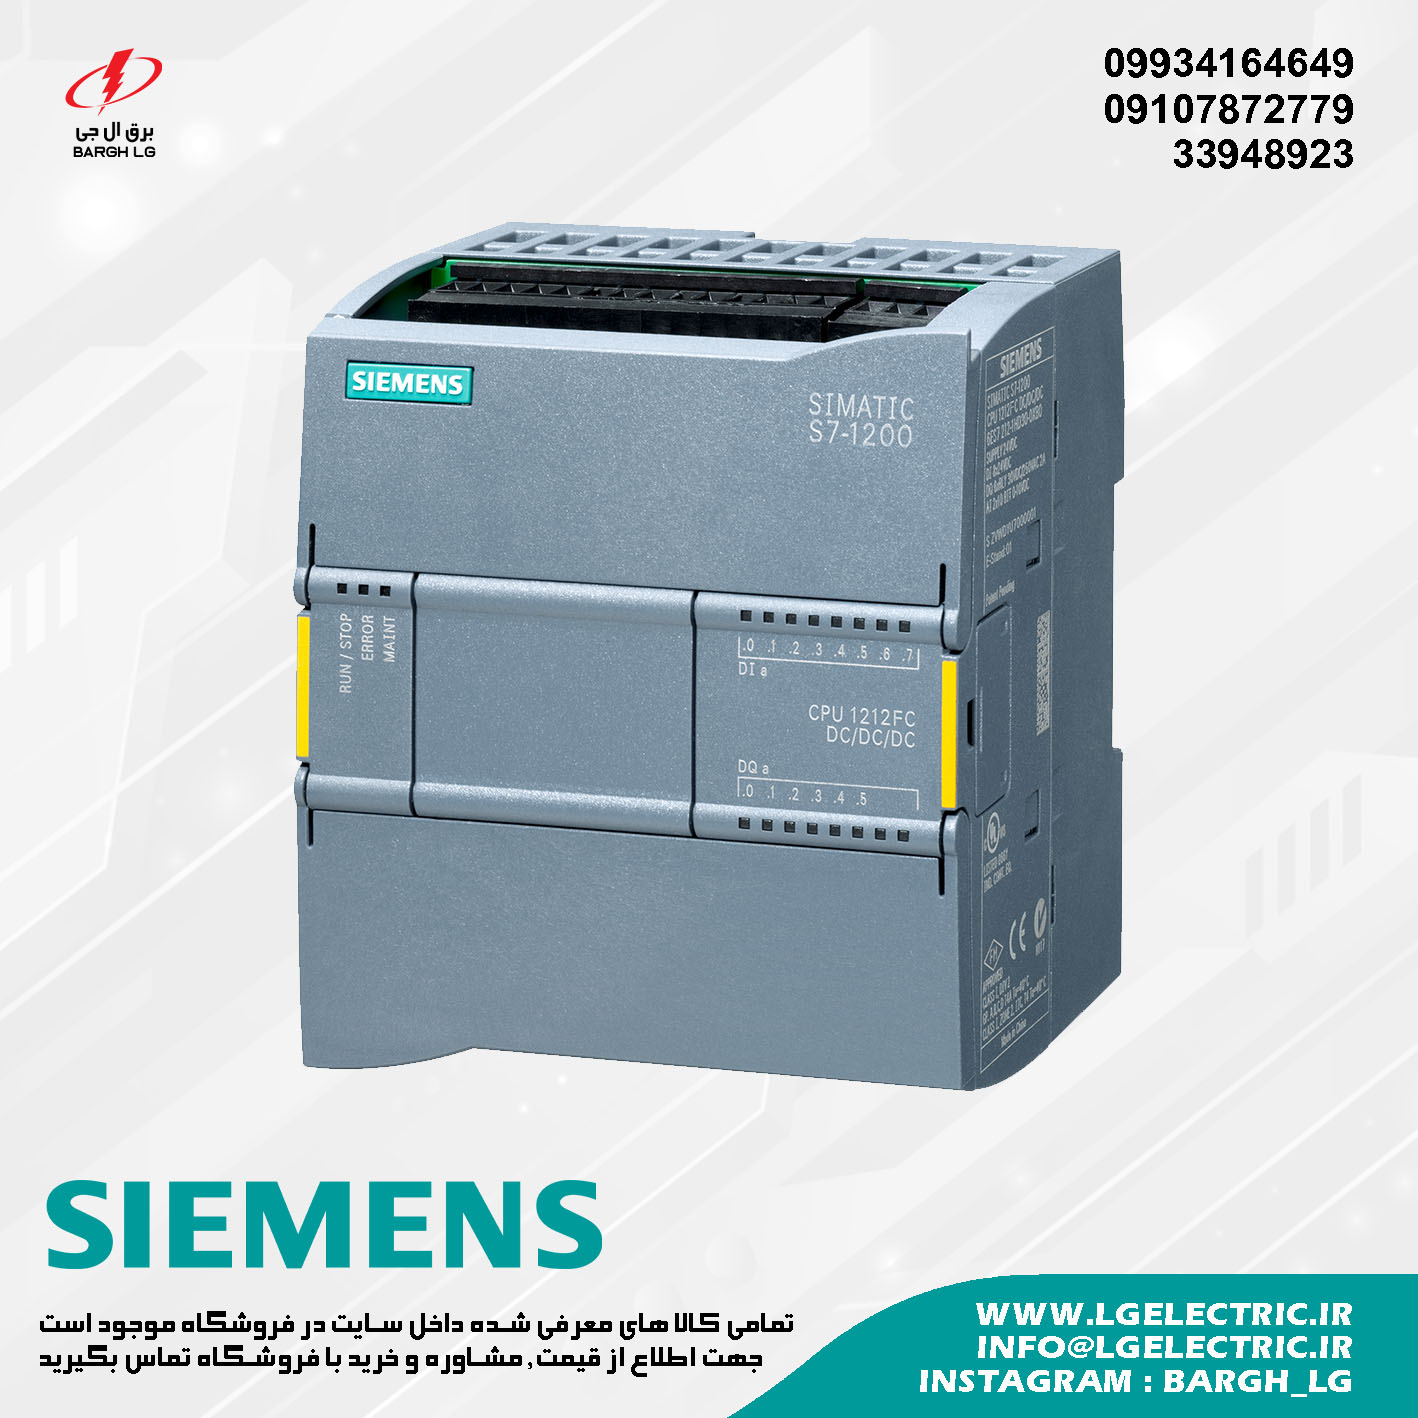 SIEMENS S7-1200 CPU 1212FC